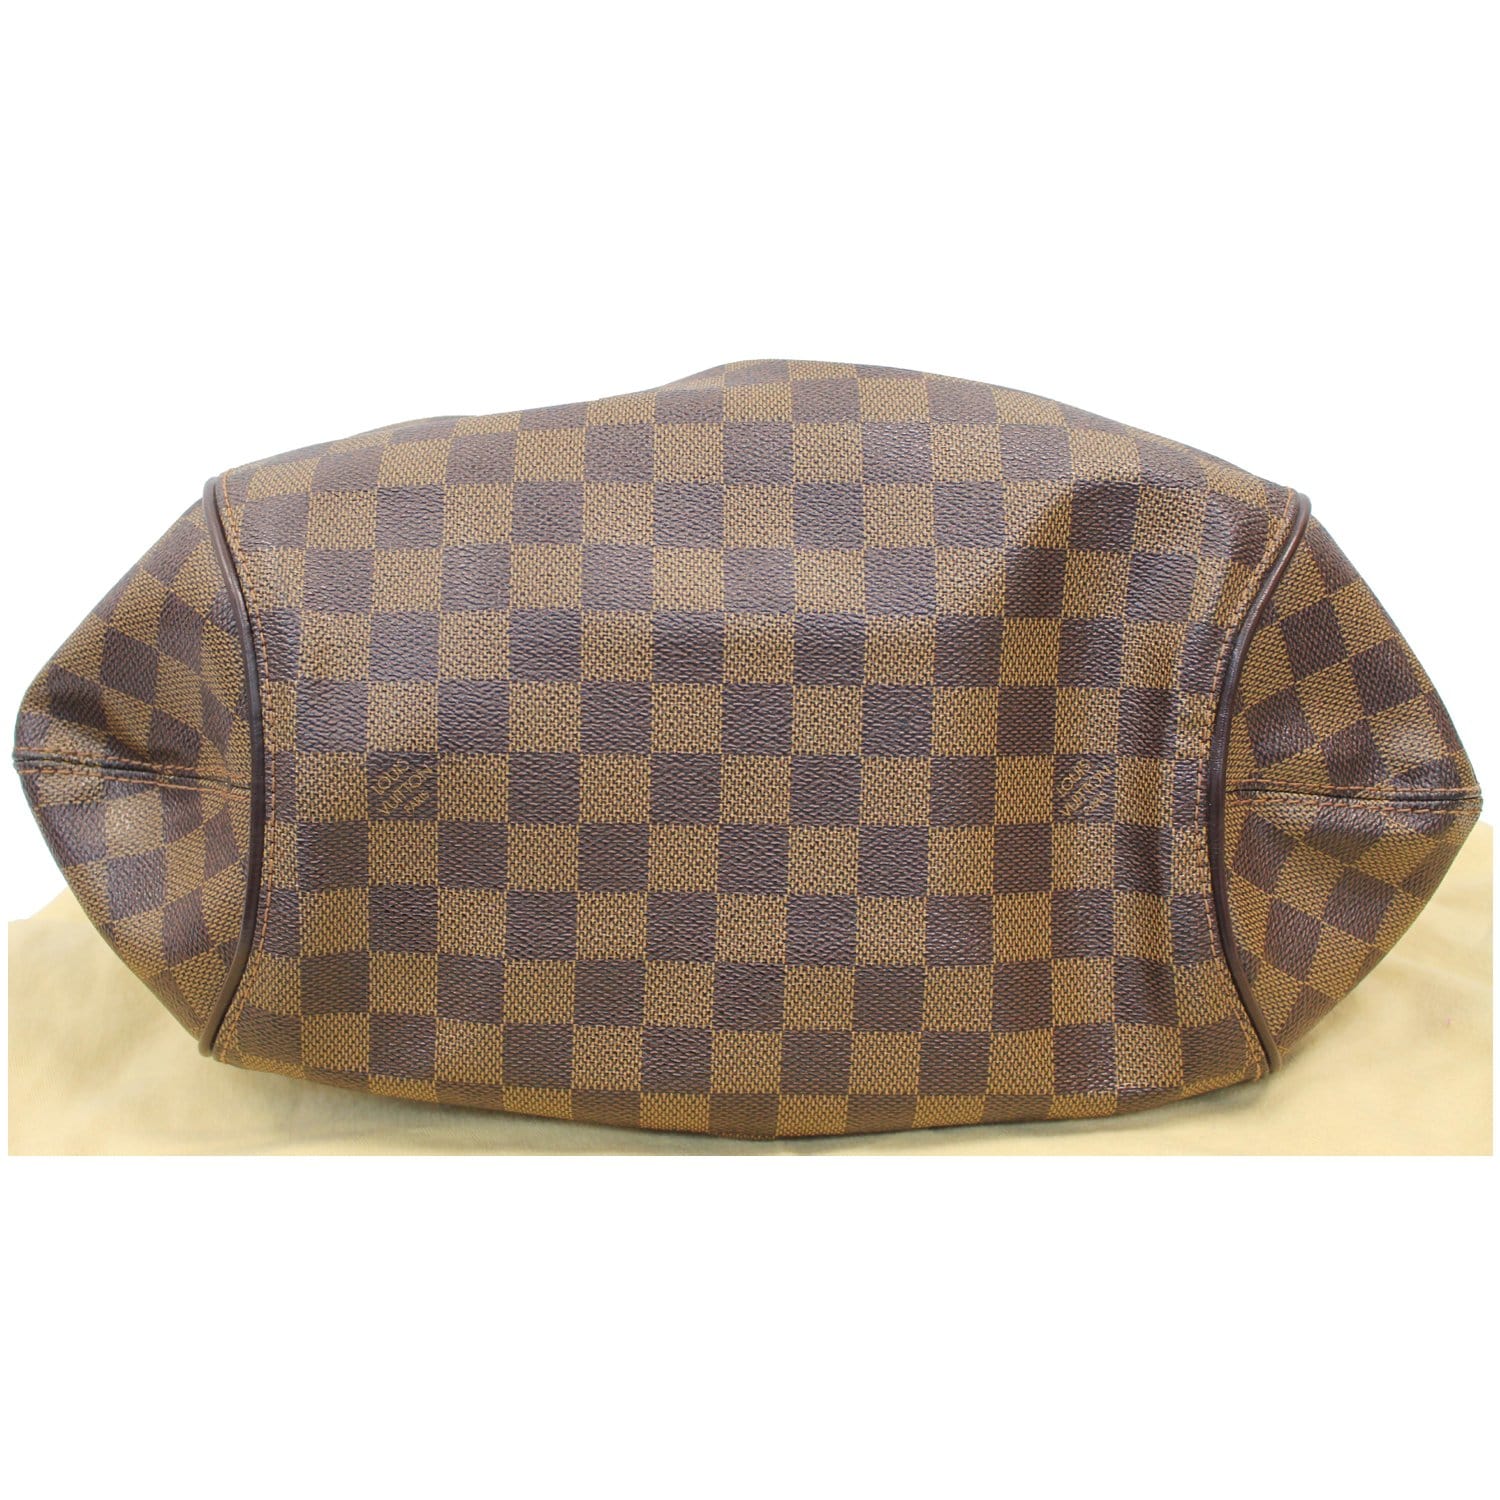 Louis Vuitton Sistina MM Damier Ebene Canvas Shoulder Bag on SALE